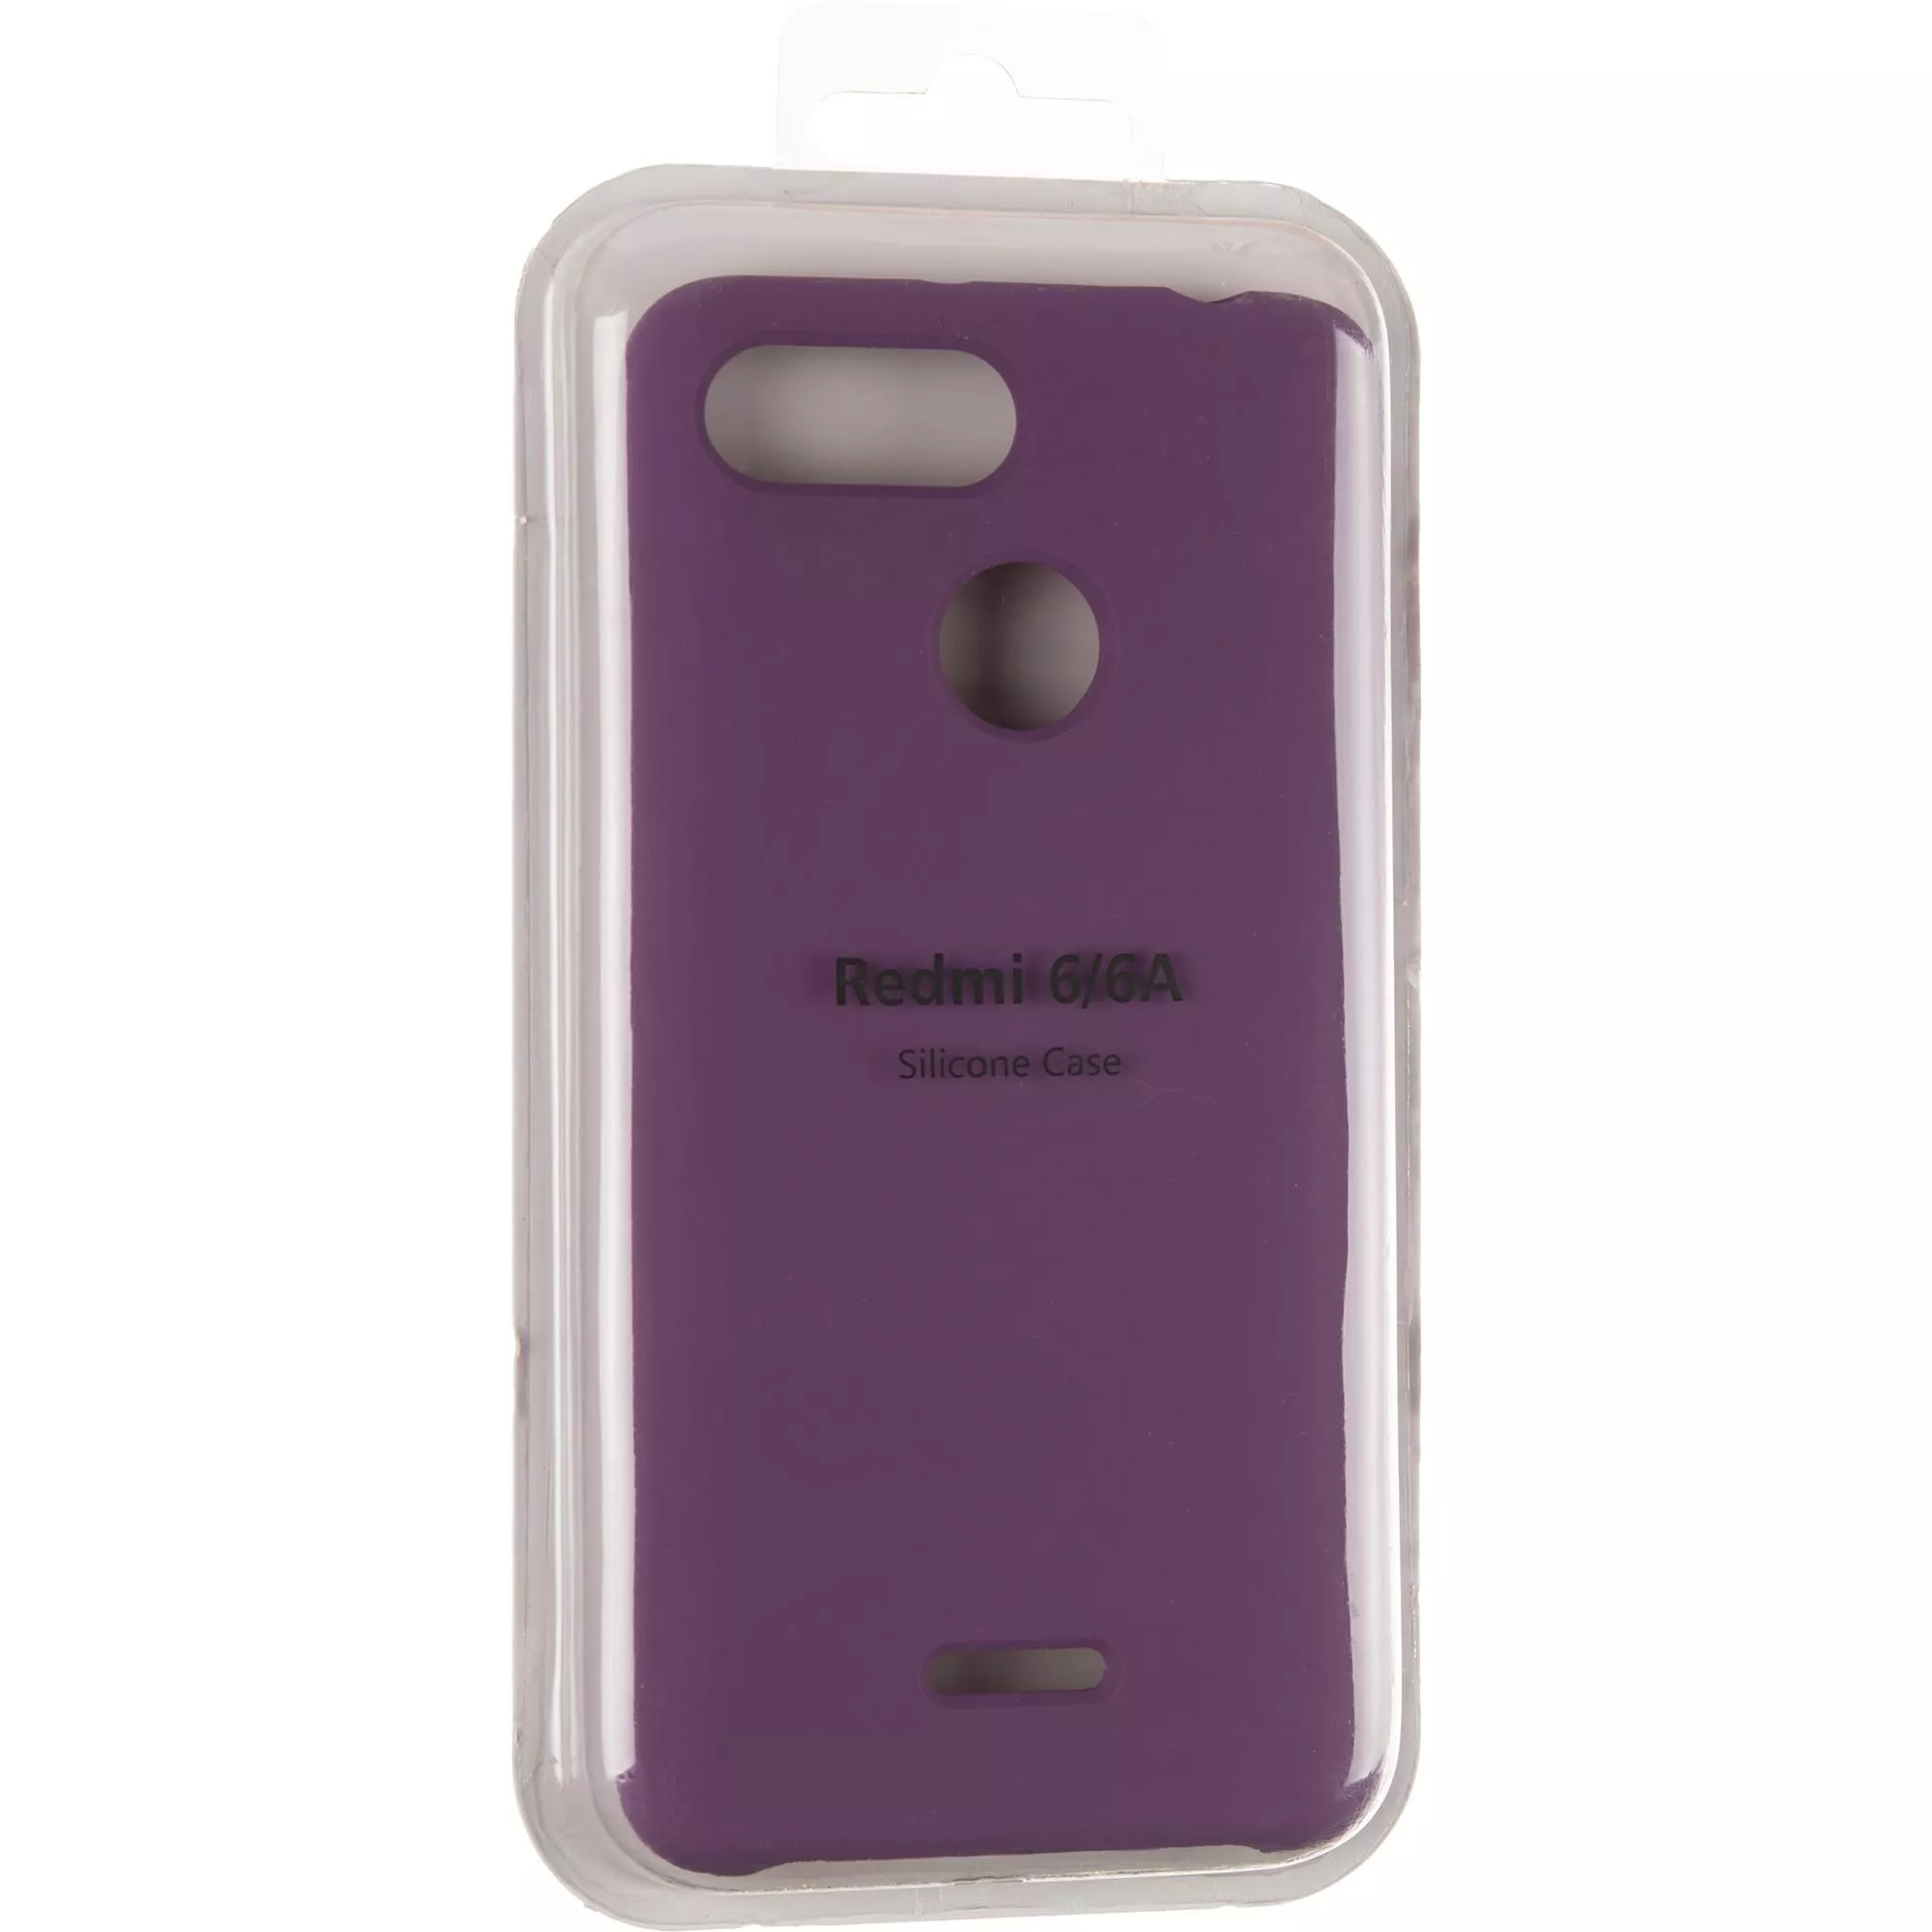 Original 99% Soft Matte Case for Xiaomi Redmi 6 Violet